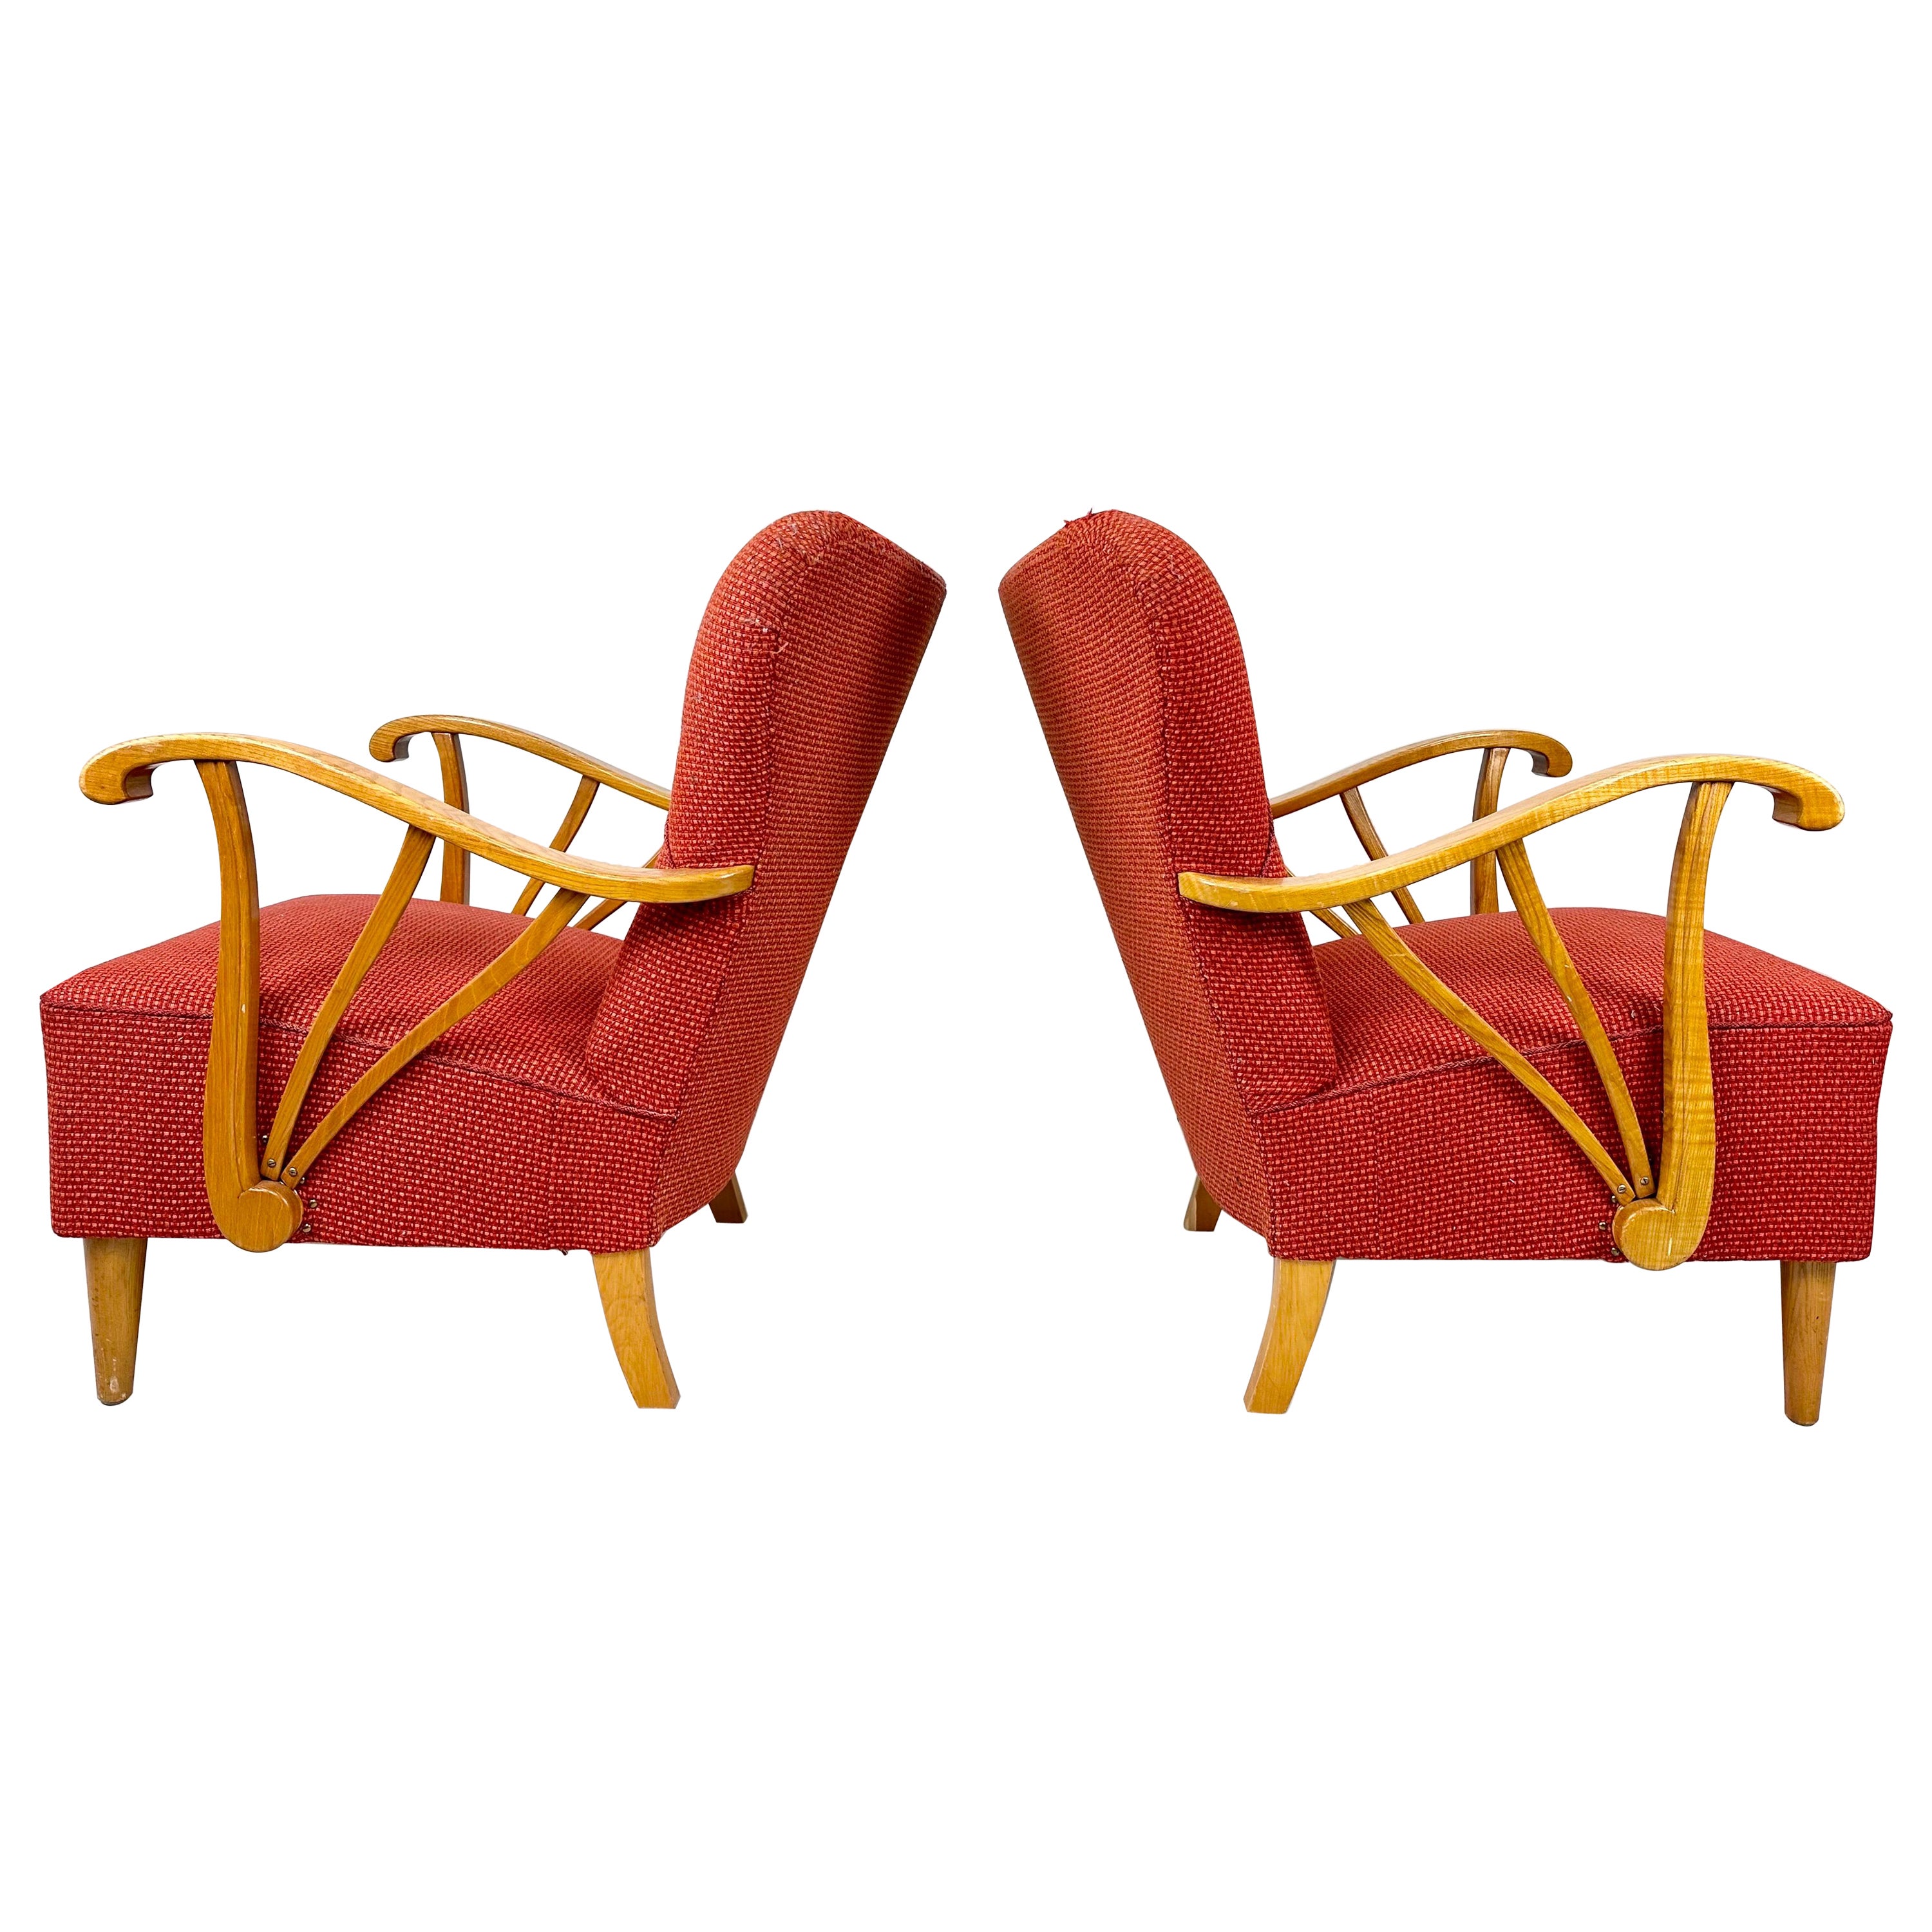 Schwedische Lounge-Stühle aus den 1940er Jahren